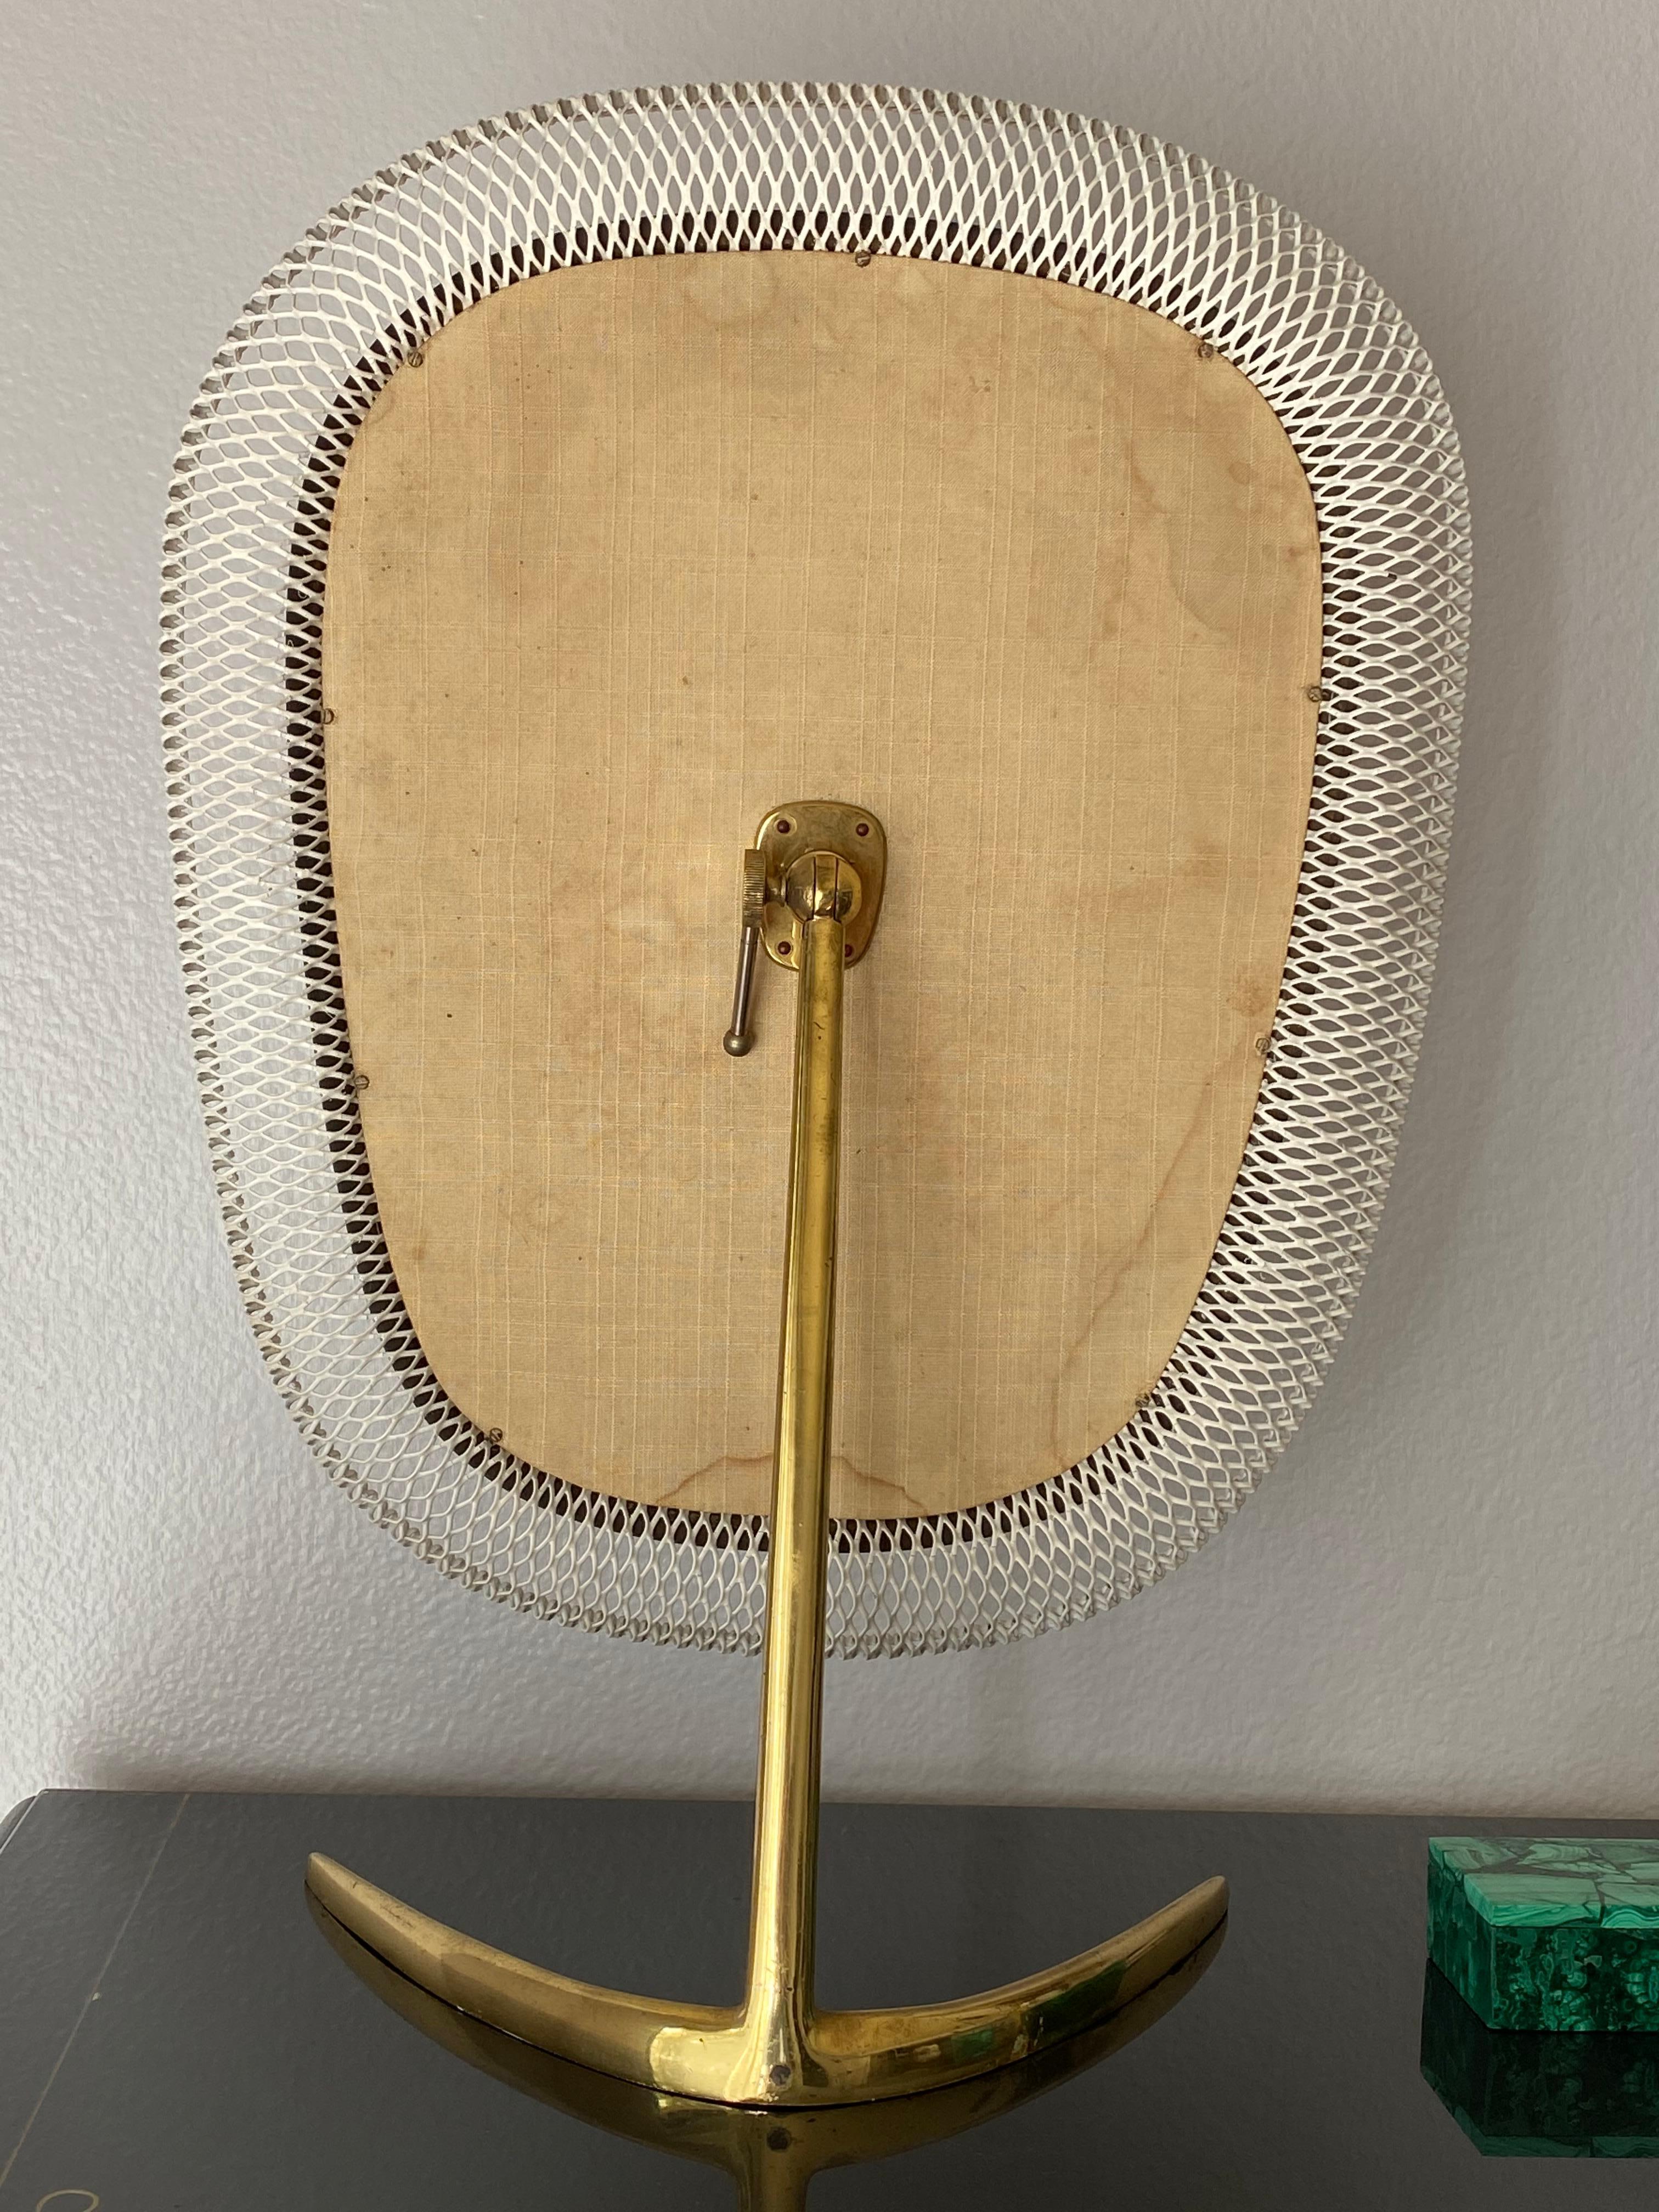 Brass modernist vanity mirror by Vereinigte Werkstätten Munchen.